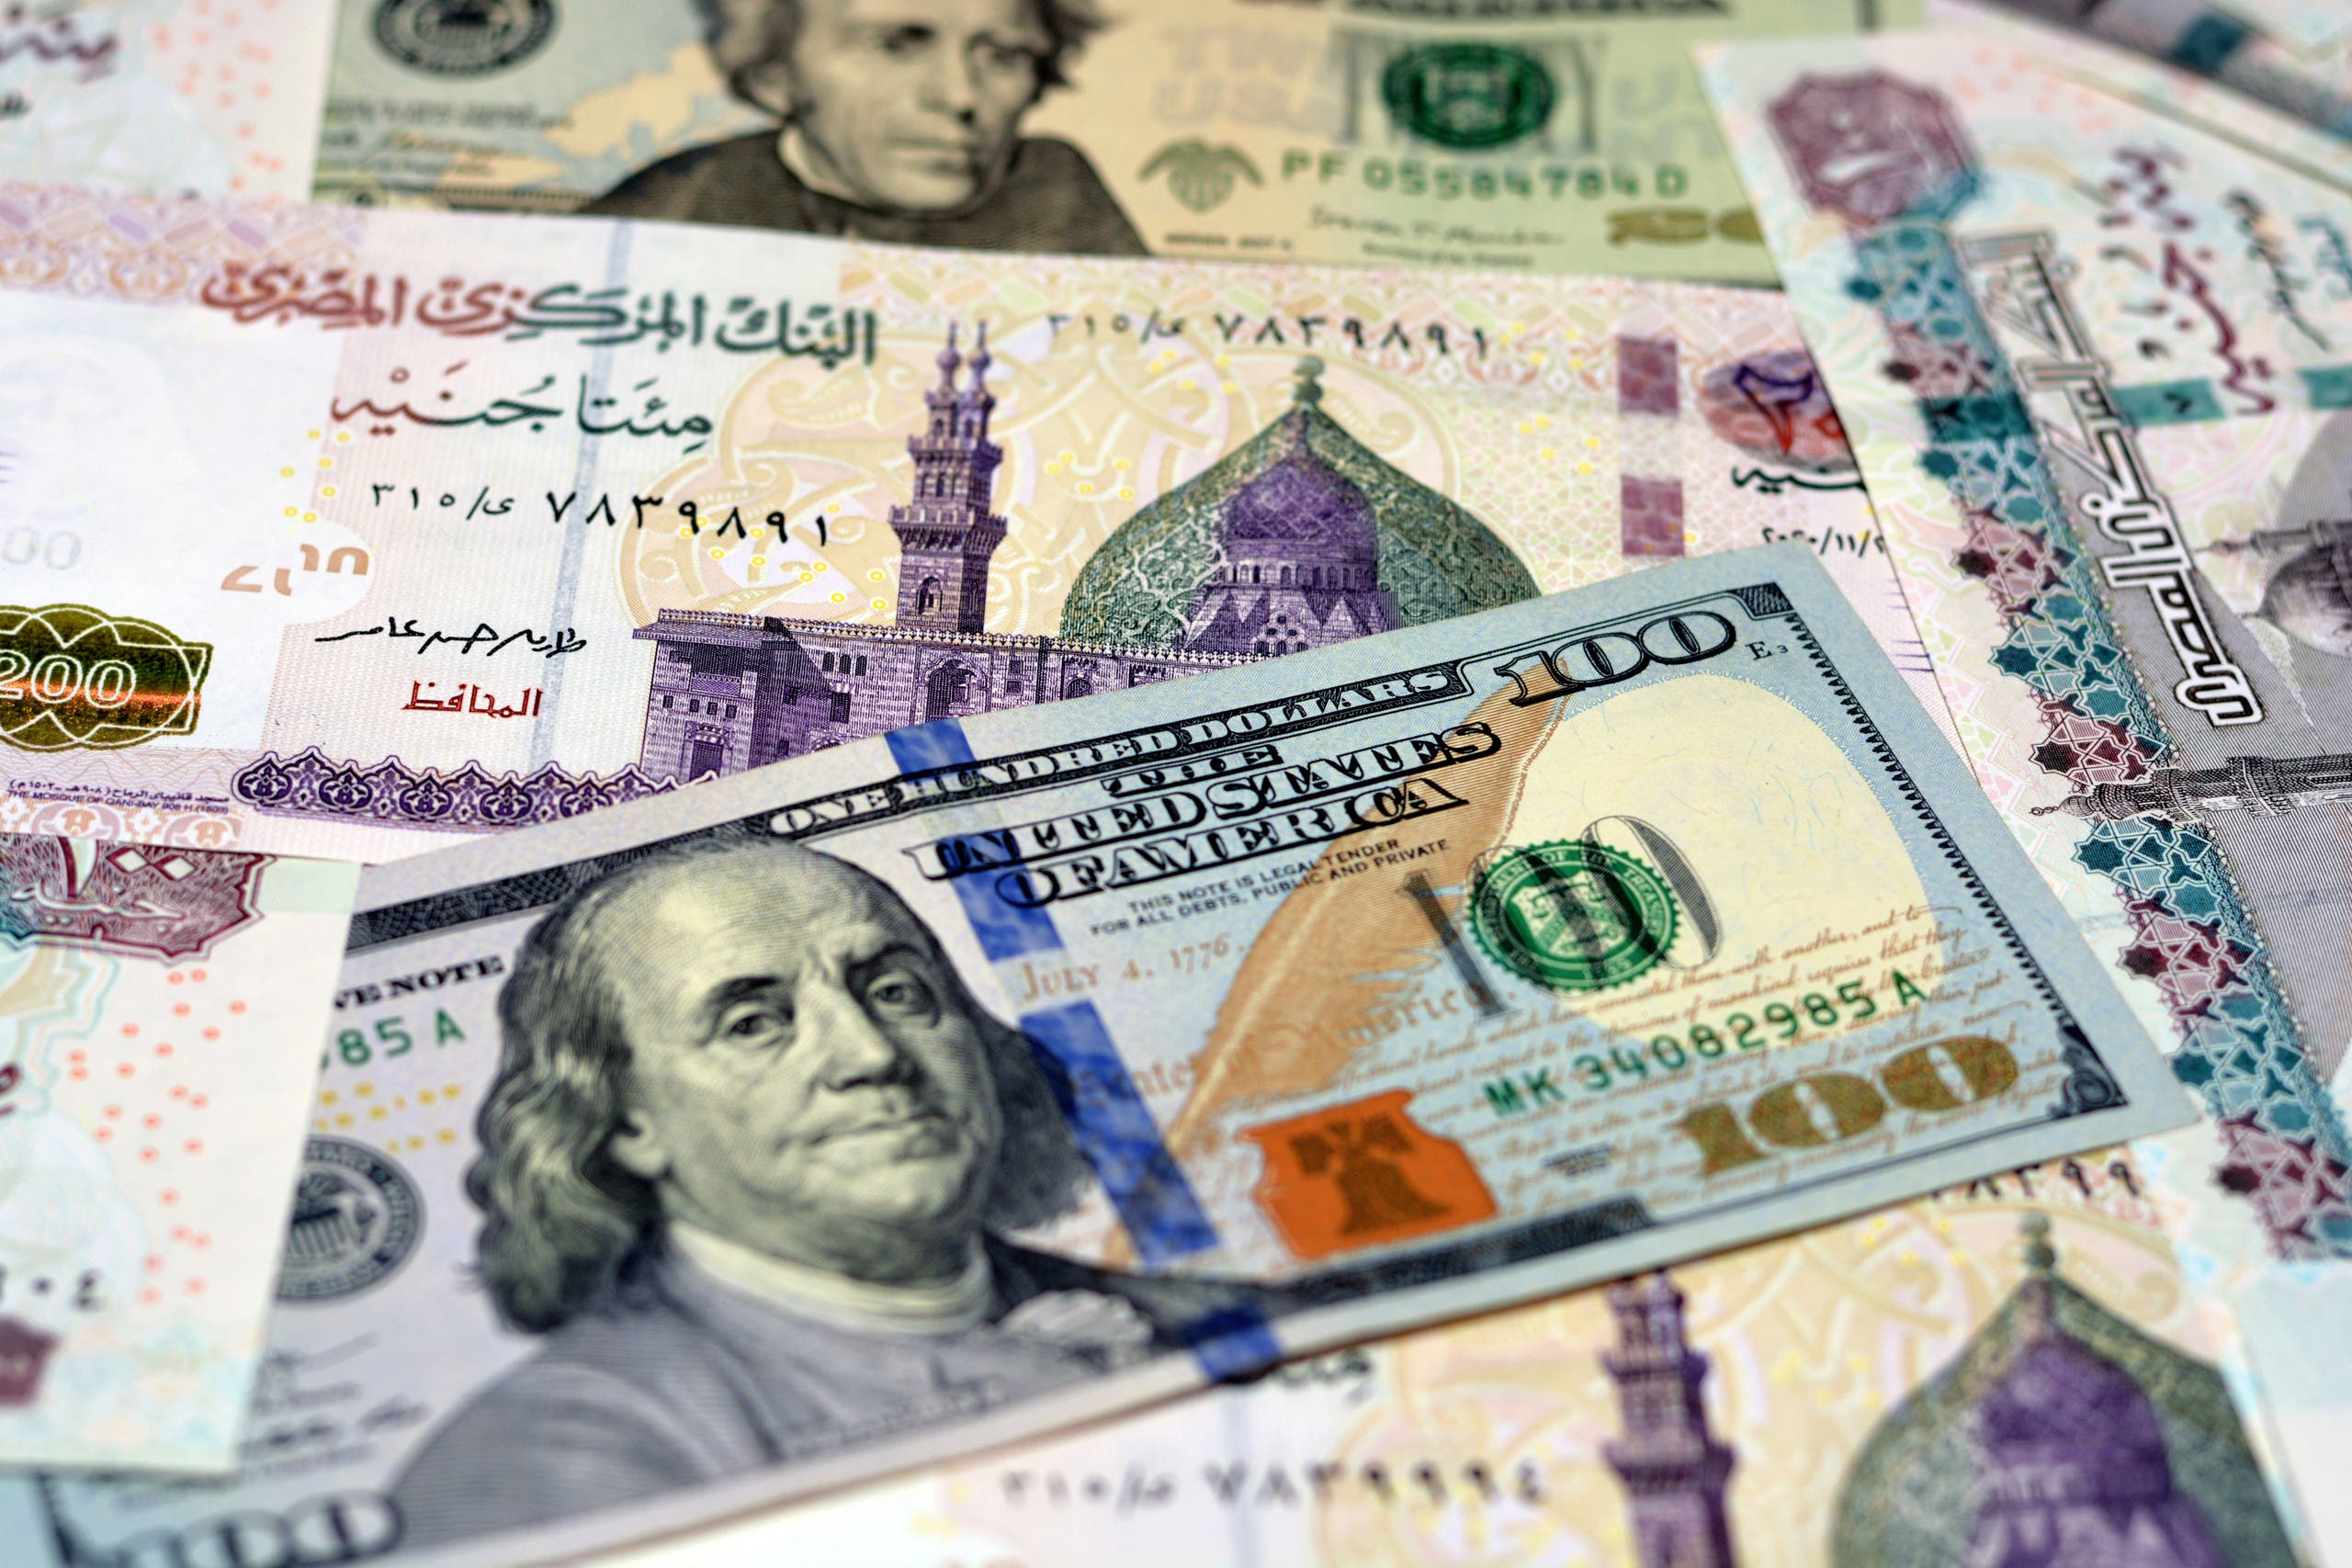 سعر الدولار في مصر يعود لتسجيل مستويات جديدة مقابل الجنيه